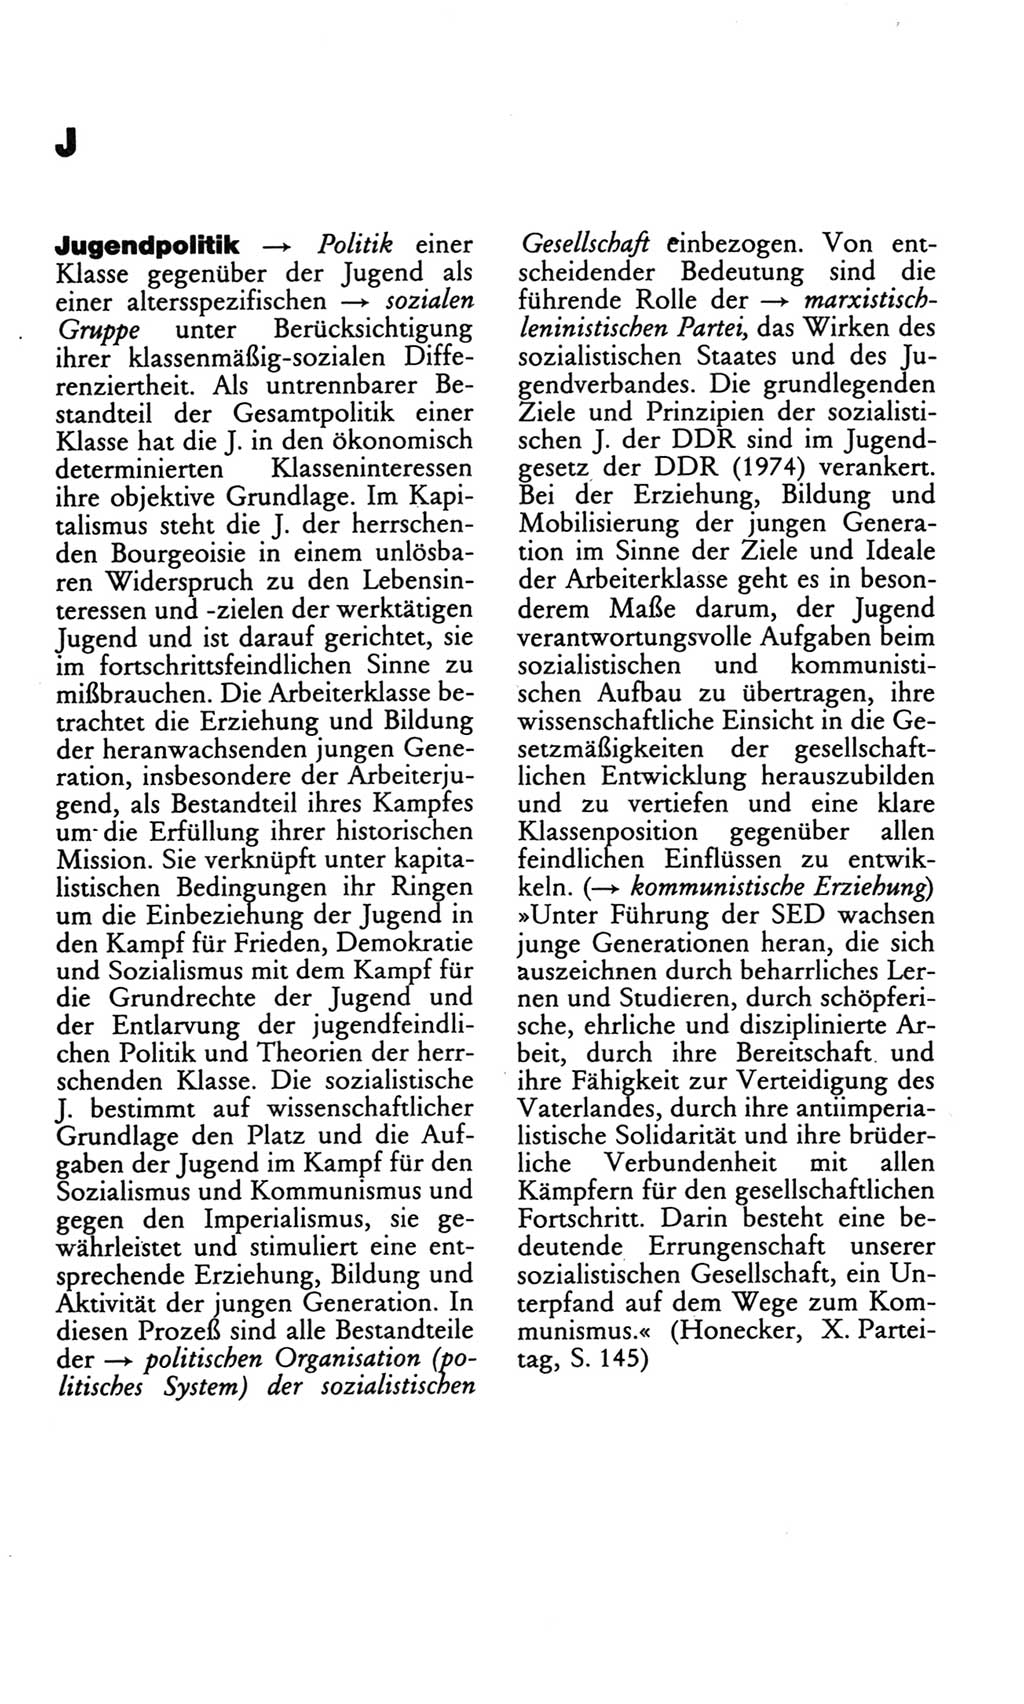 Wörterbuch des wissenschaftlichen Kommunismus [Deutsche Demokratische Republik (DDR)] 1982, Seite 178 (Wb. wiss. Komm. DDR 1982, S. 178)